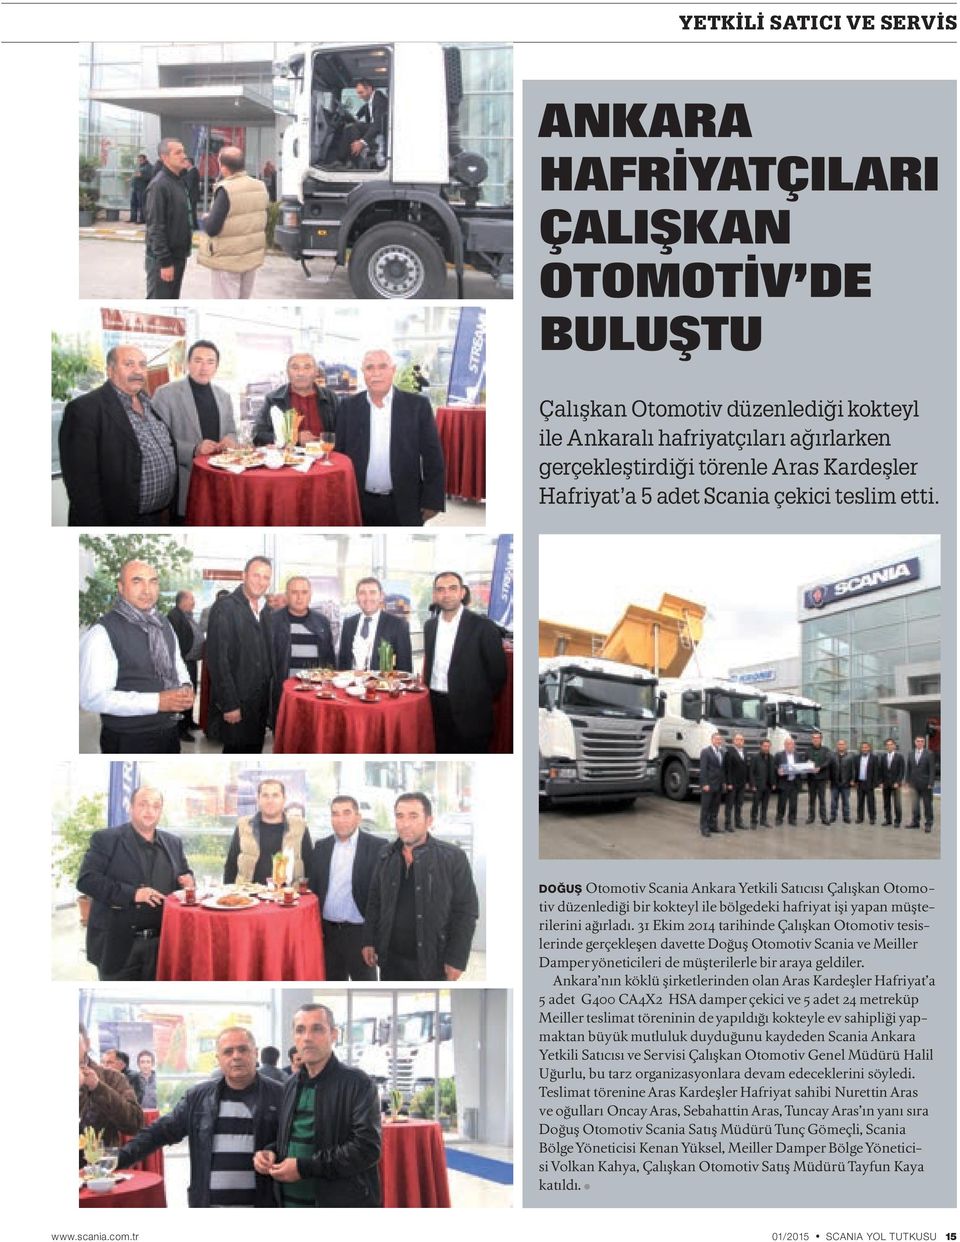 31 Ekim 2014 tarihinde Çalışkan Otomotiv tesislerinde gerçekleşen davette Doğuş Otomotiv Scania ve Meiller Damper yöneticileri de müşterilerle bir araya geldiler.